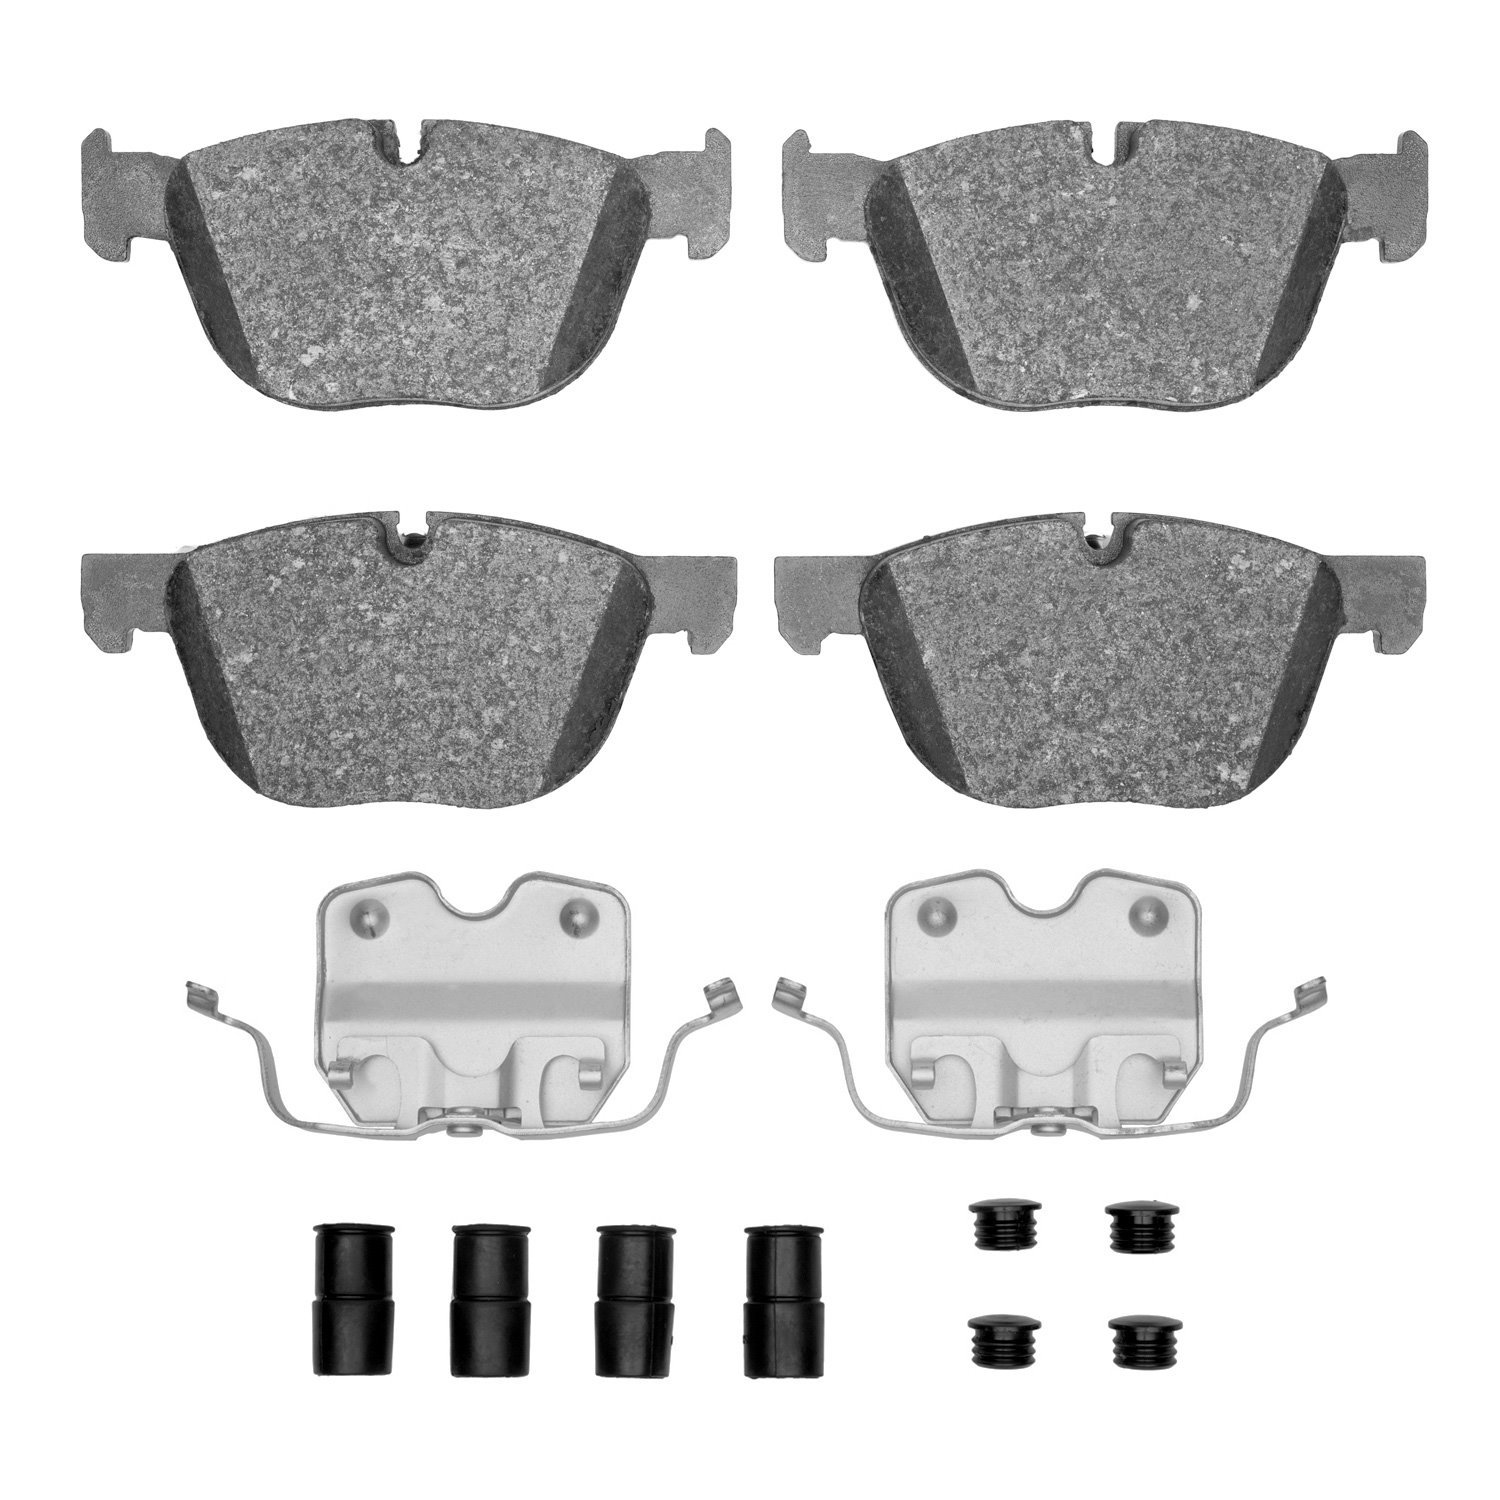 1311-1294-01 3000-Series Semi-Metallic Brake Pads & Hardware Kit, 2007-2019 BMW, Position: Front